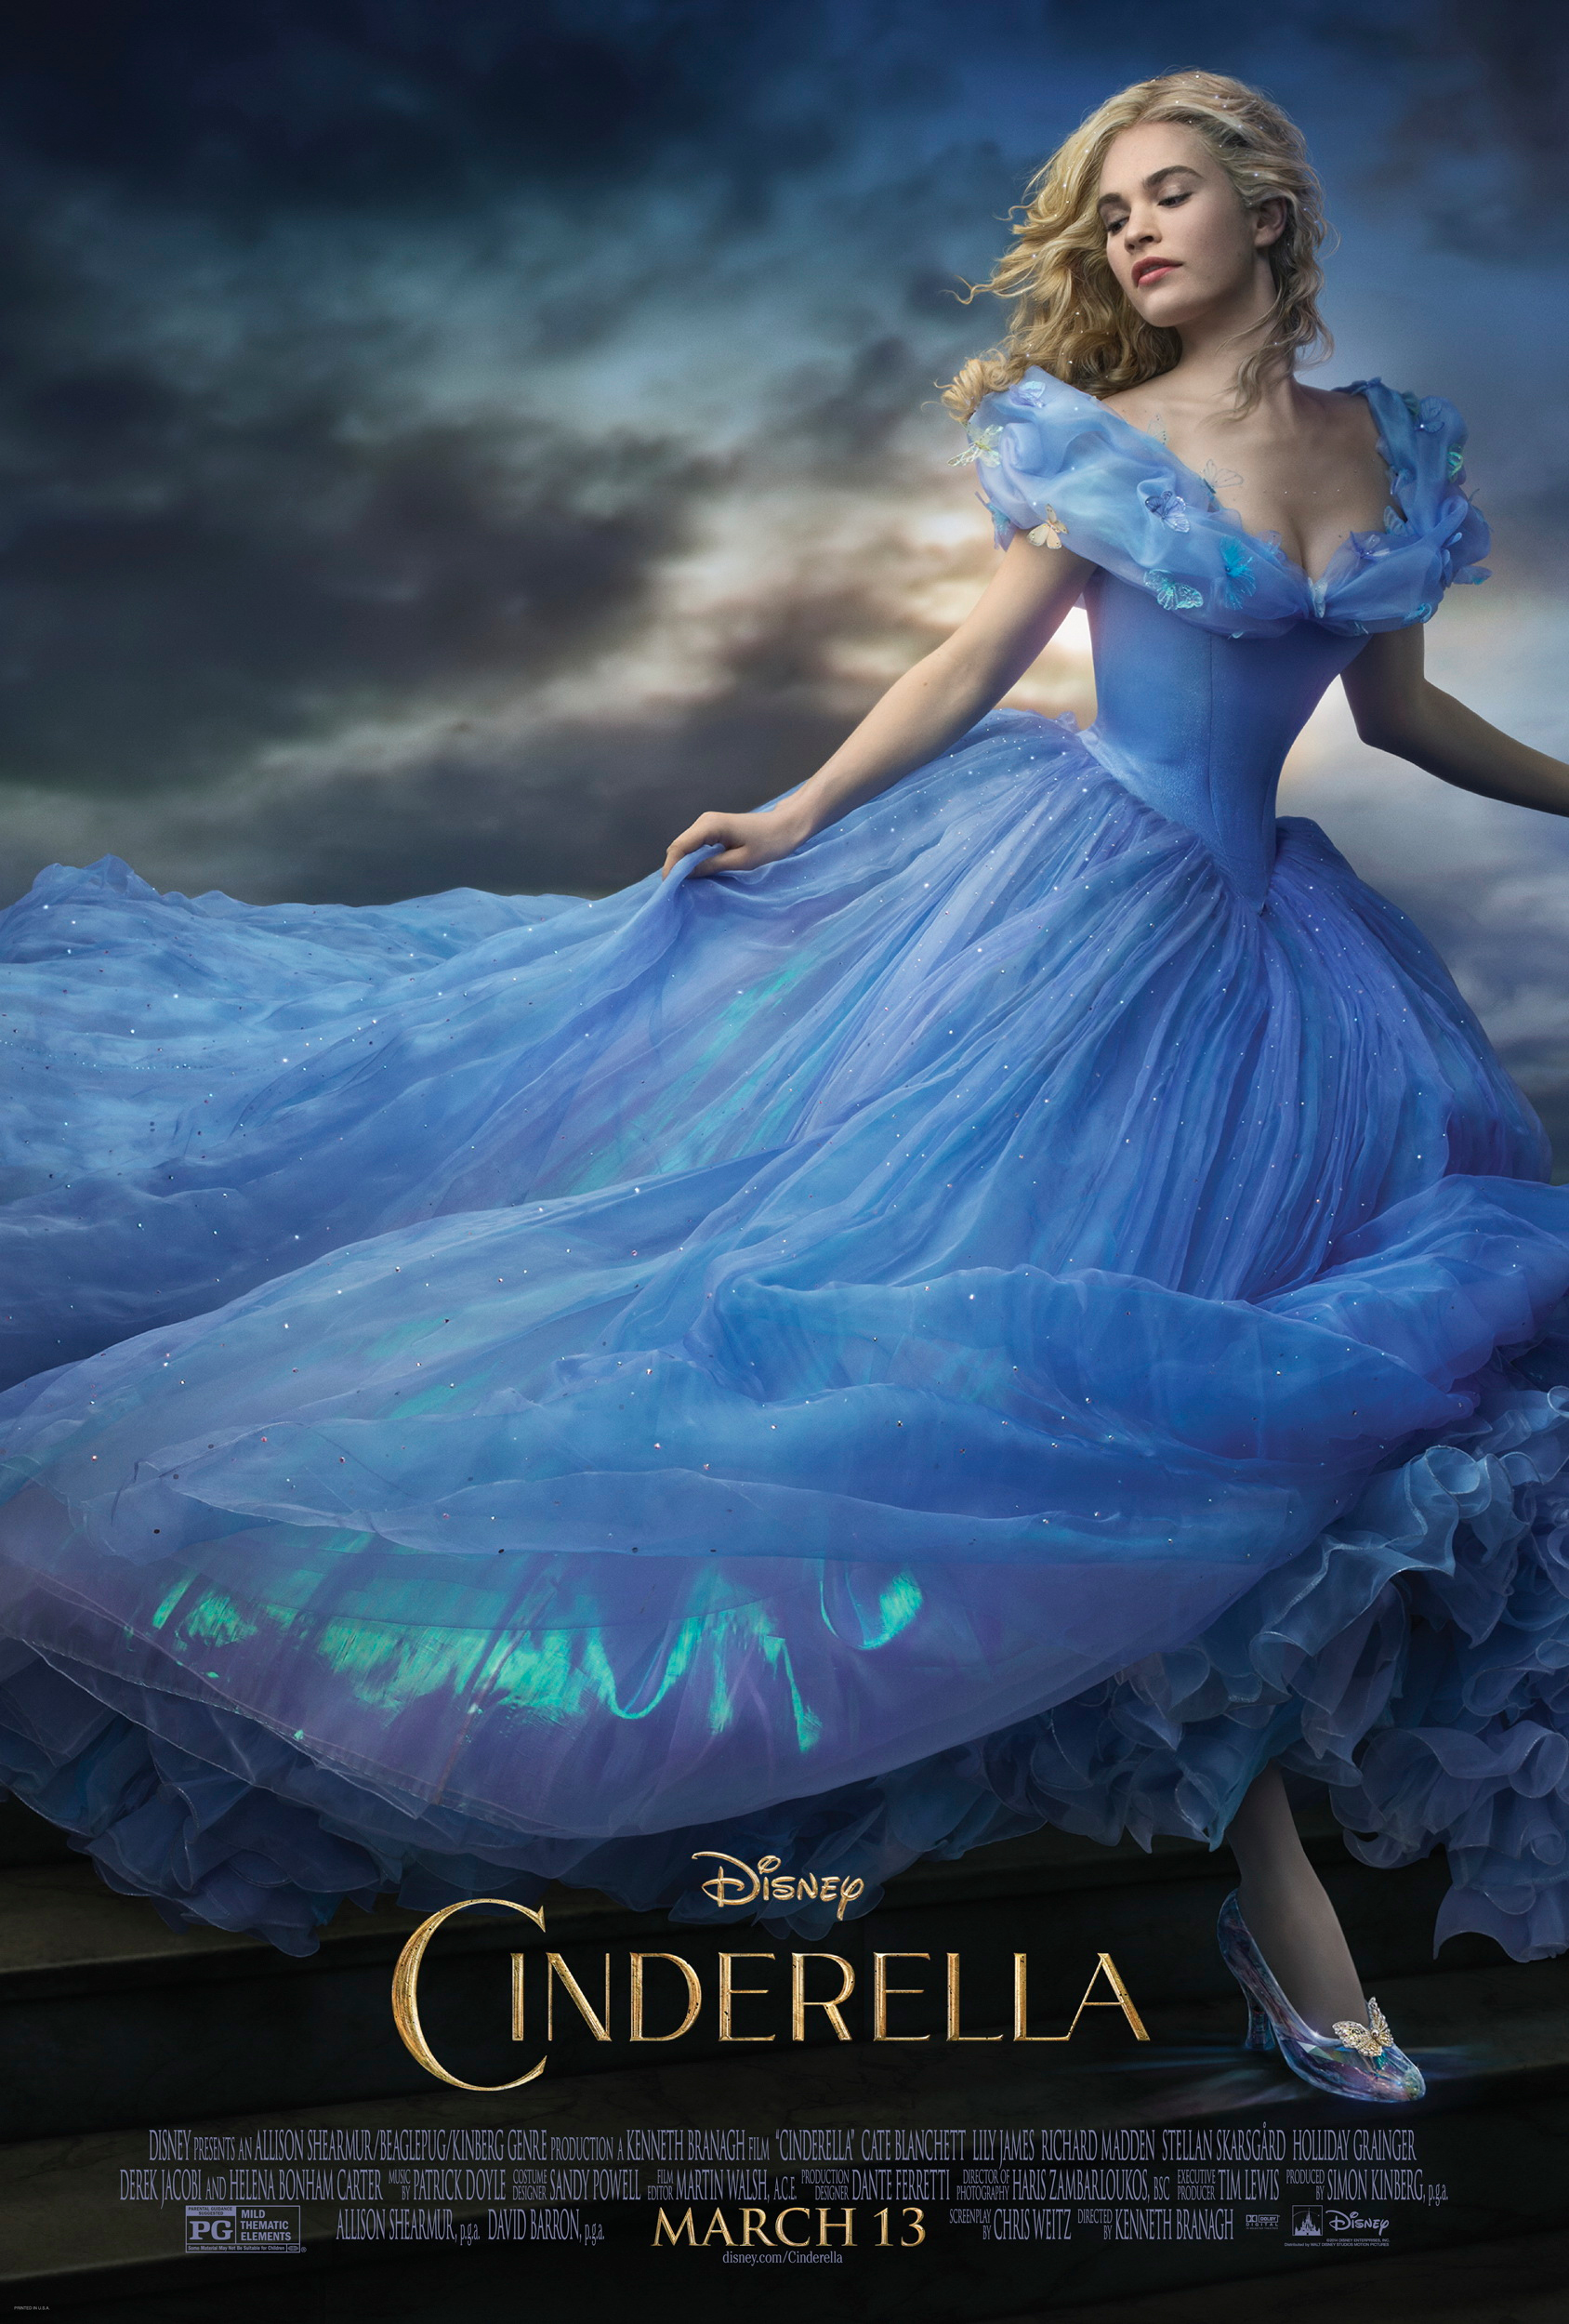 Les princesses Disney représentées dans de sublimes robes de